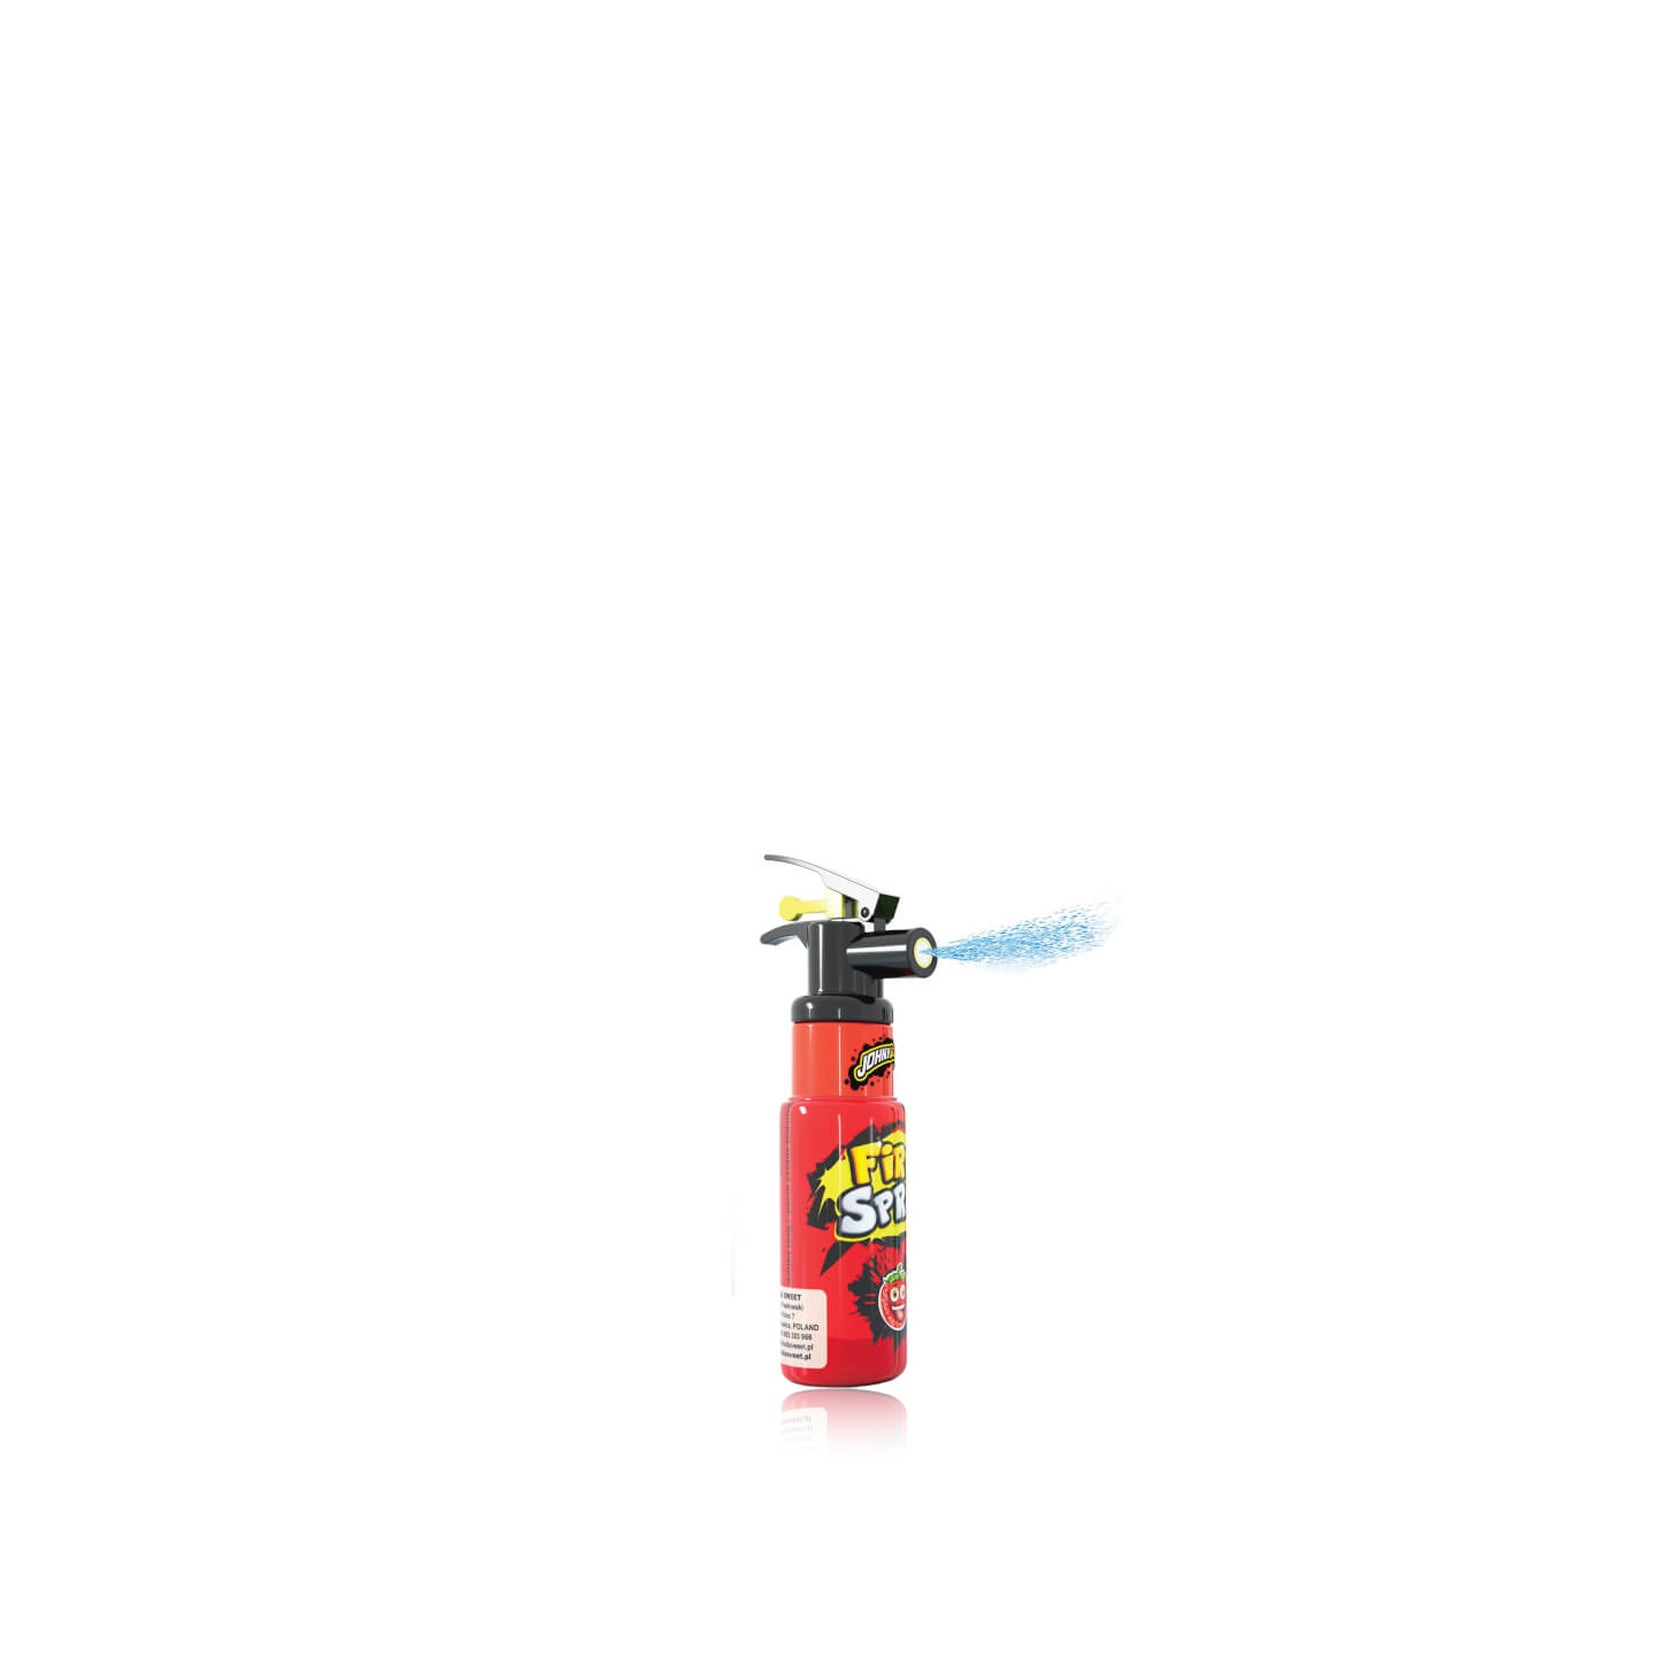 JB Fire Spray 25 ml